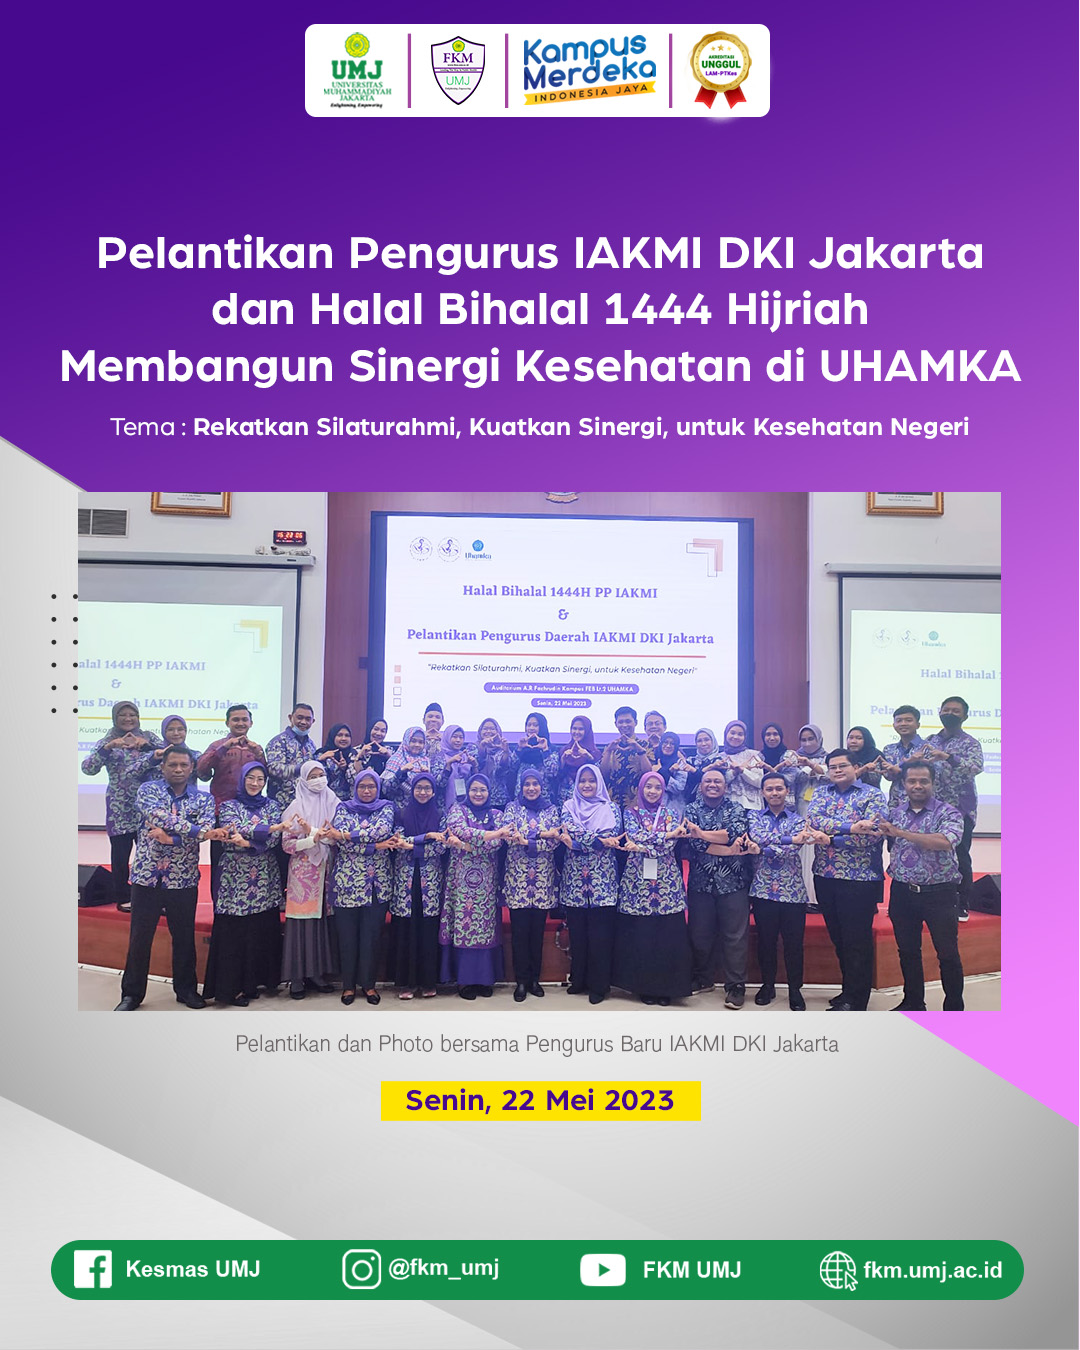 Pelantikan Pengurus IAKMI DKI Jakarta dan Halal Bihalal 1444 Hijriah Membangun Sinergi Kesehatan di UHAMKA